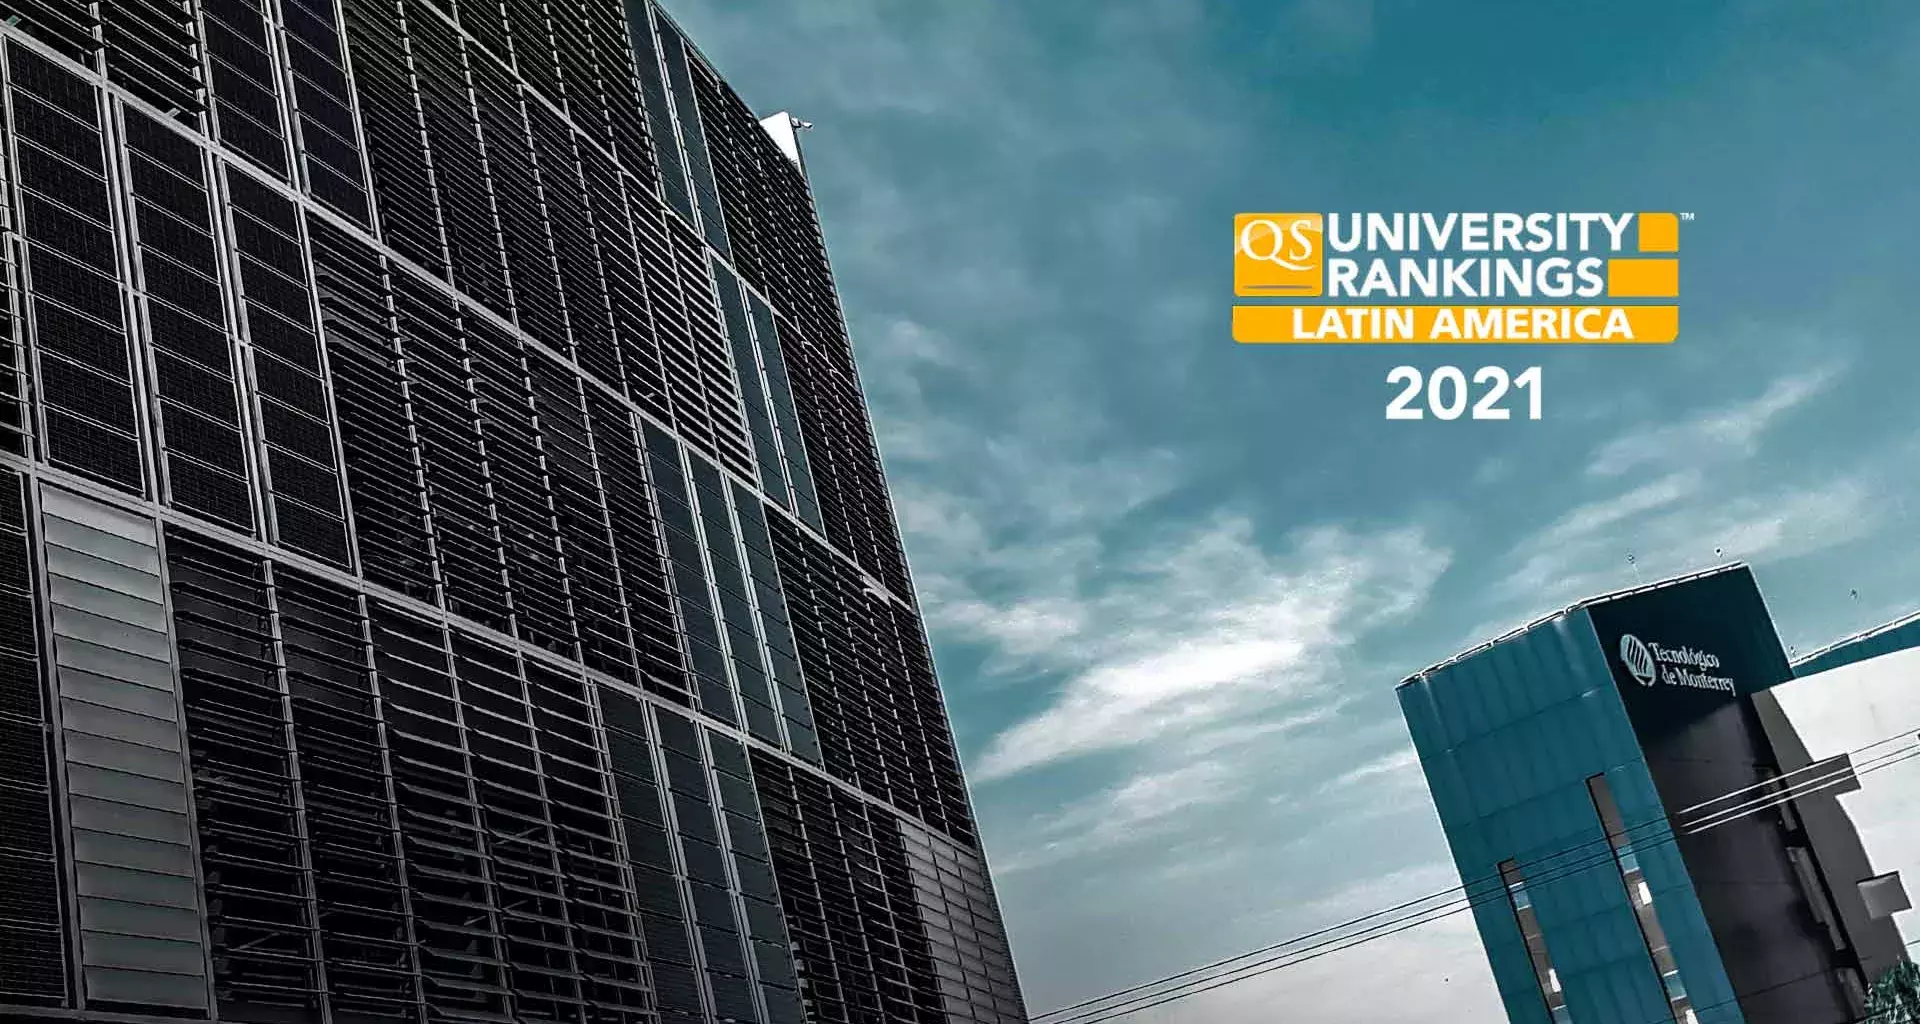 Tec, en Top 3 de universidades en Latinoamérica, según ranking latinoamericano de QS